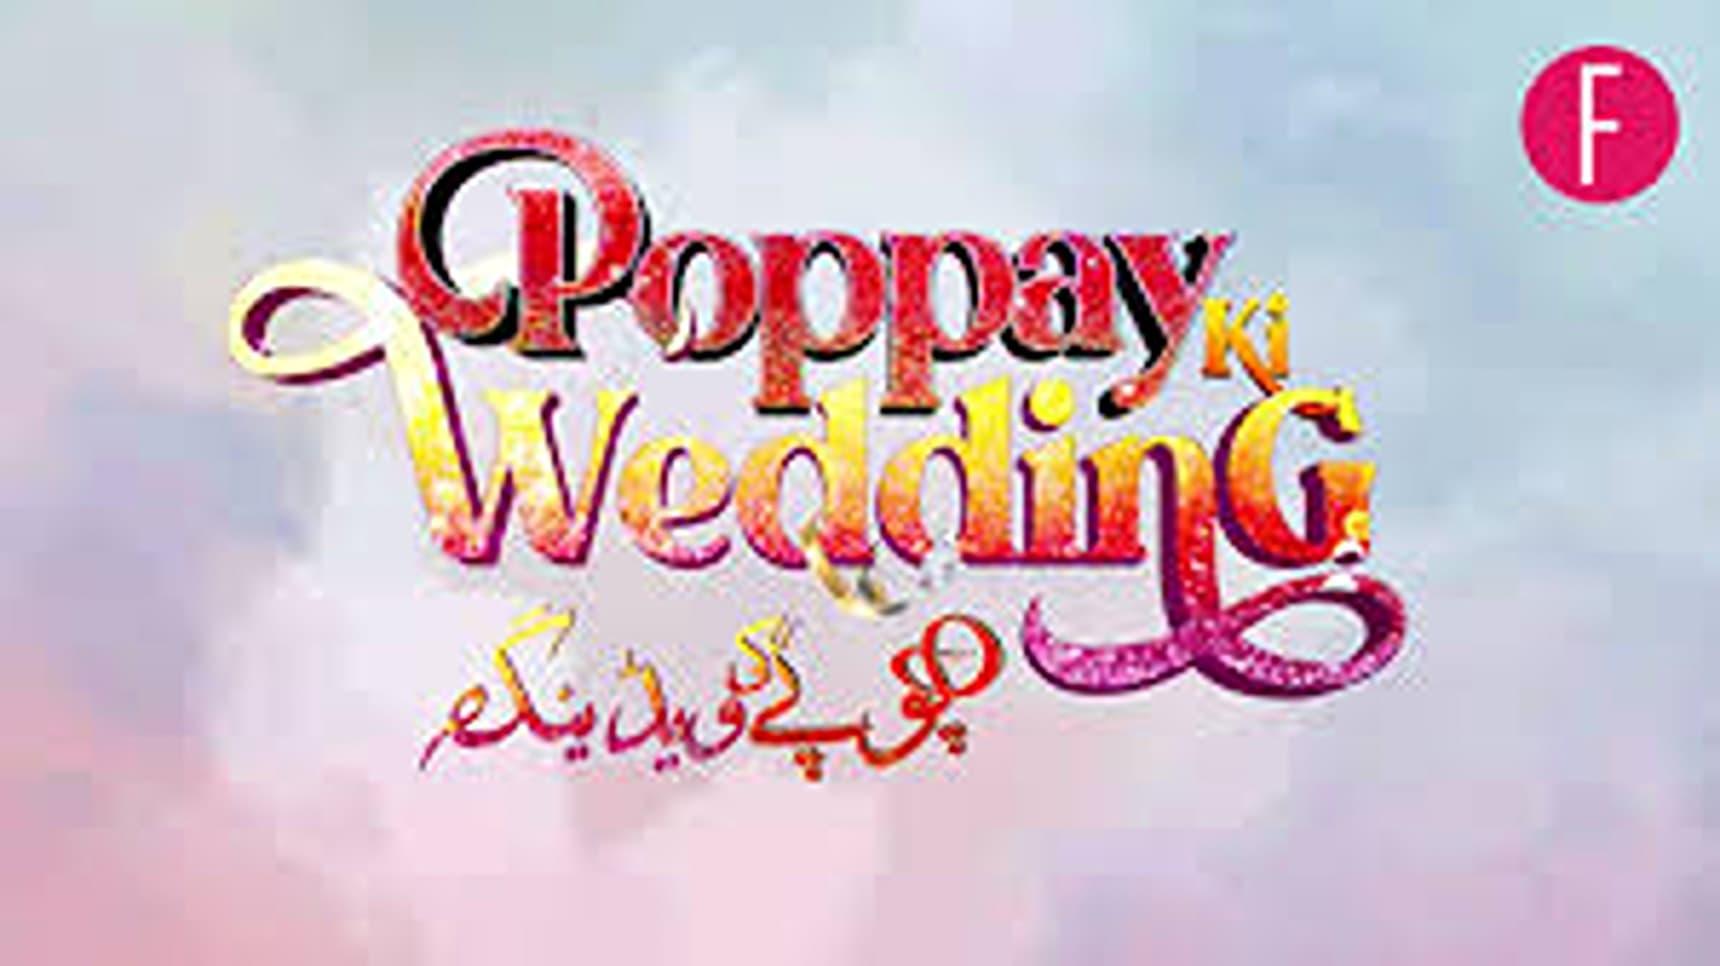 Poppay Ki Wedding backdrop